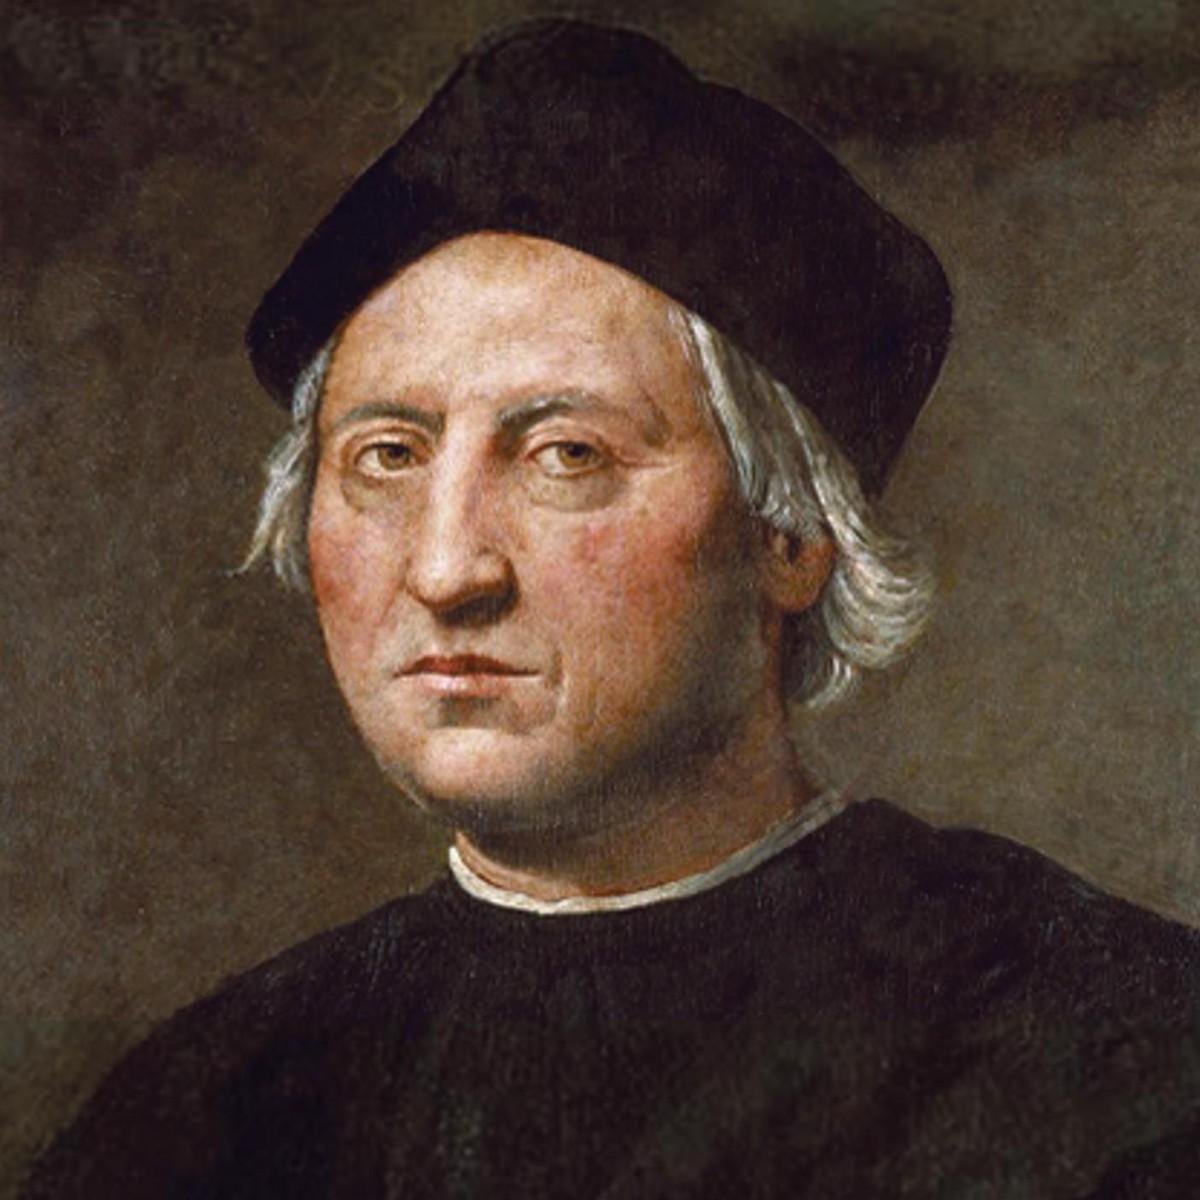 Portrait de Christophe Colomb (vers 1450-1506).